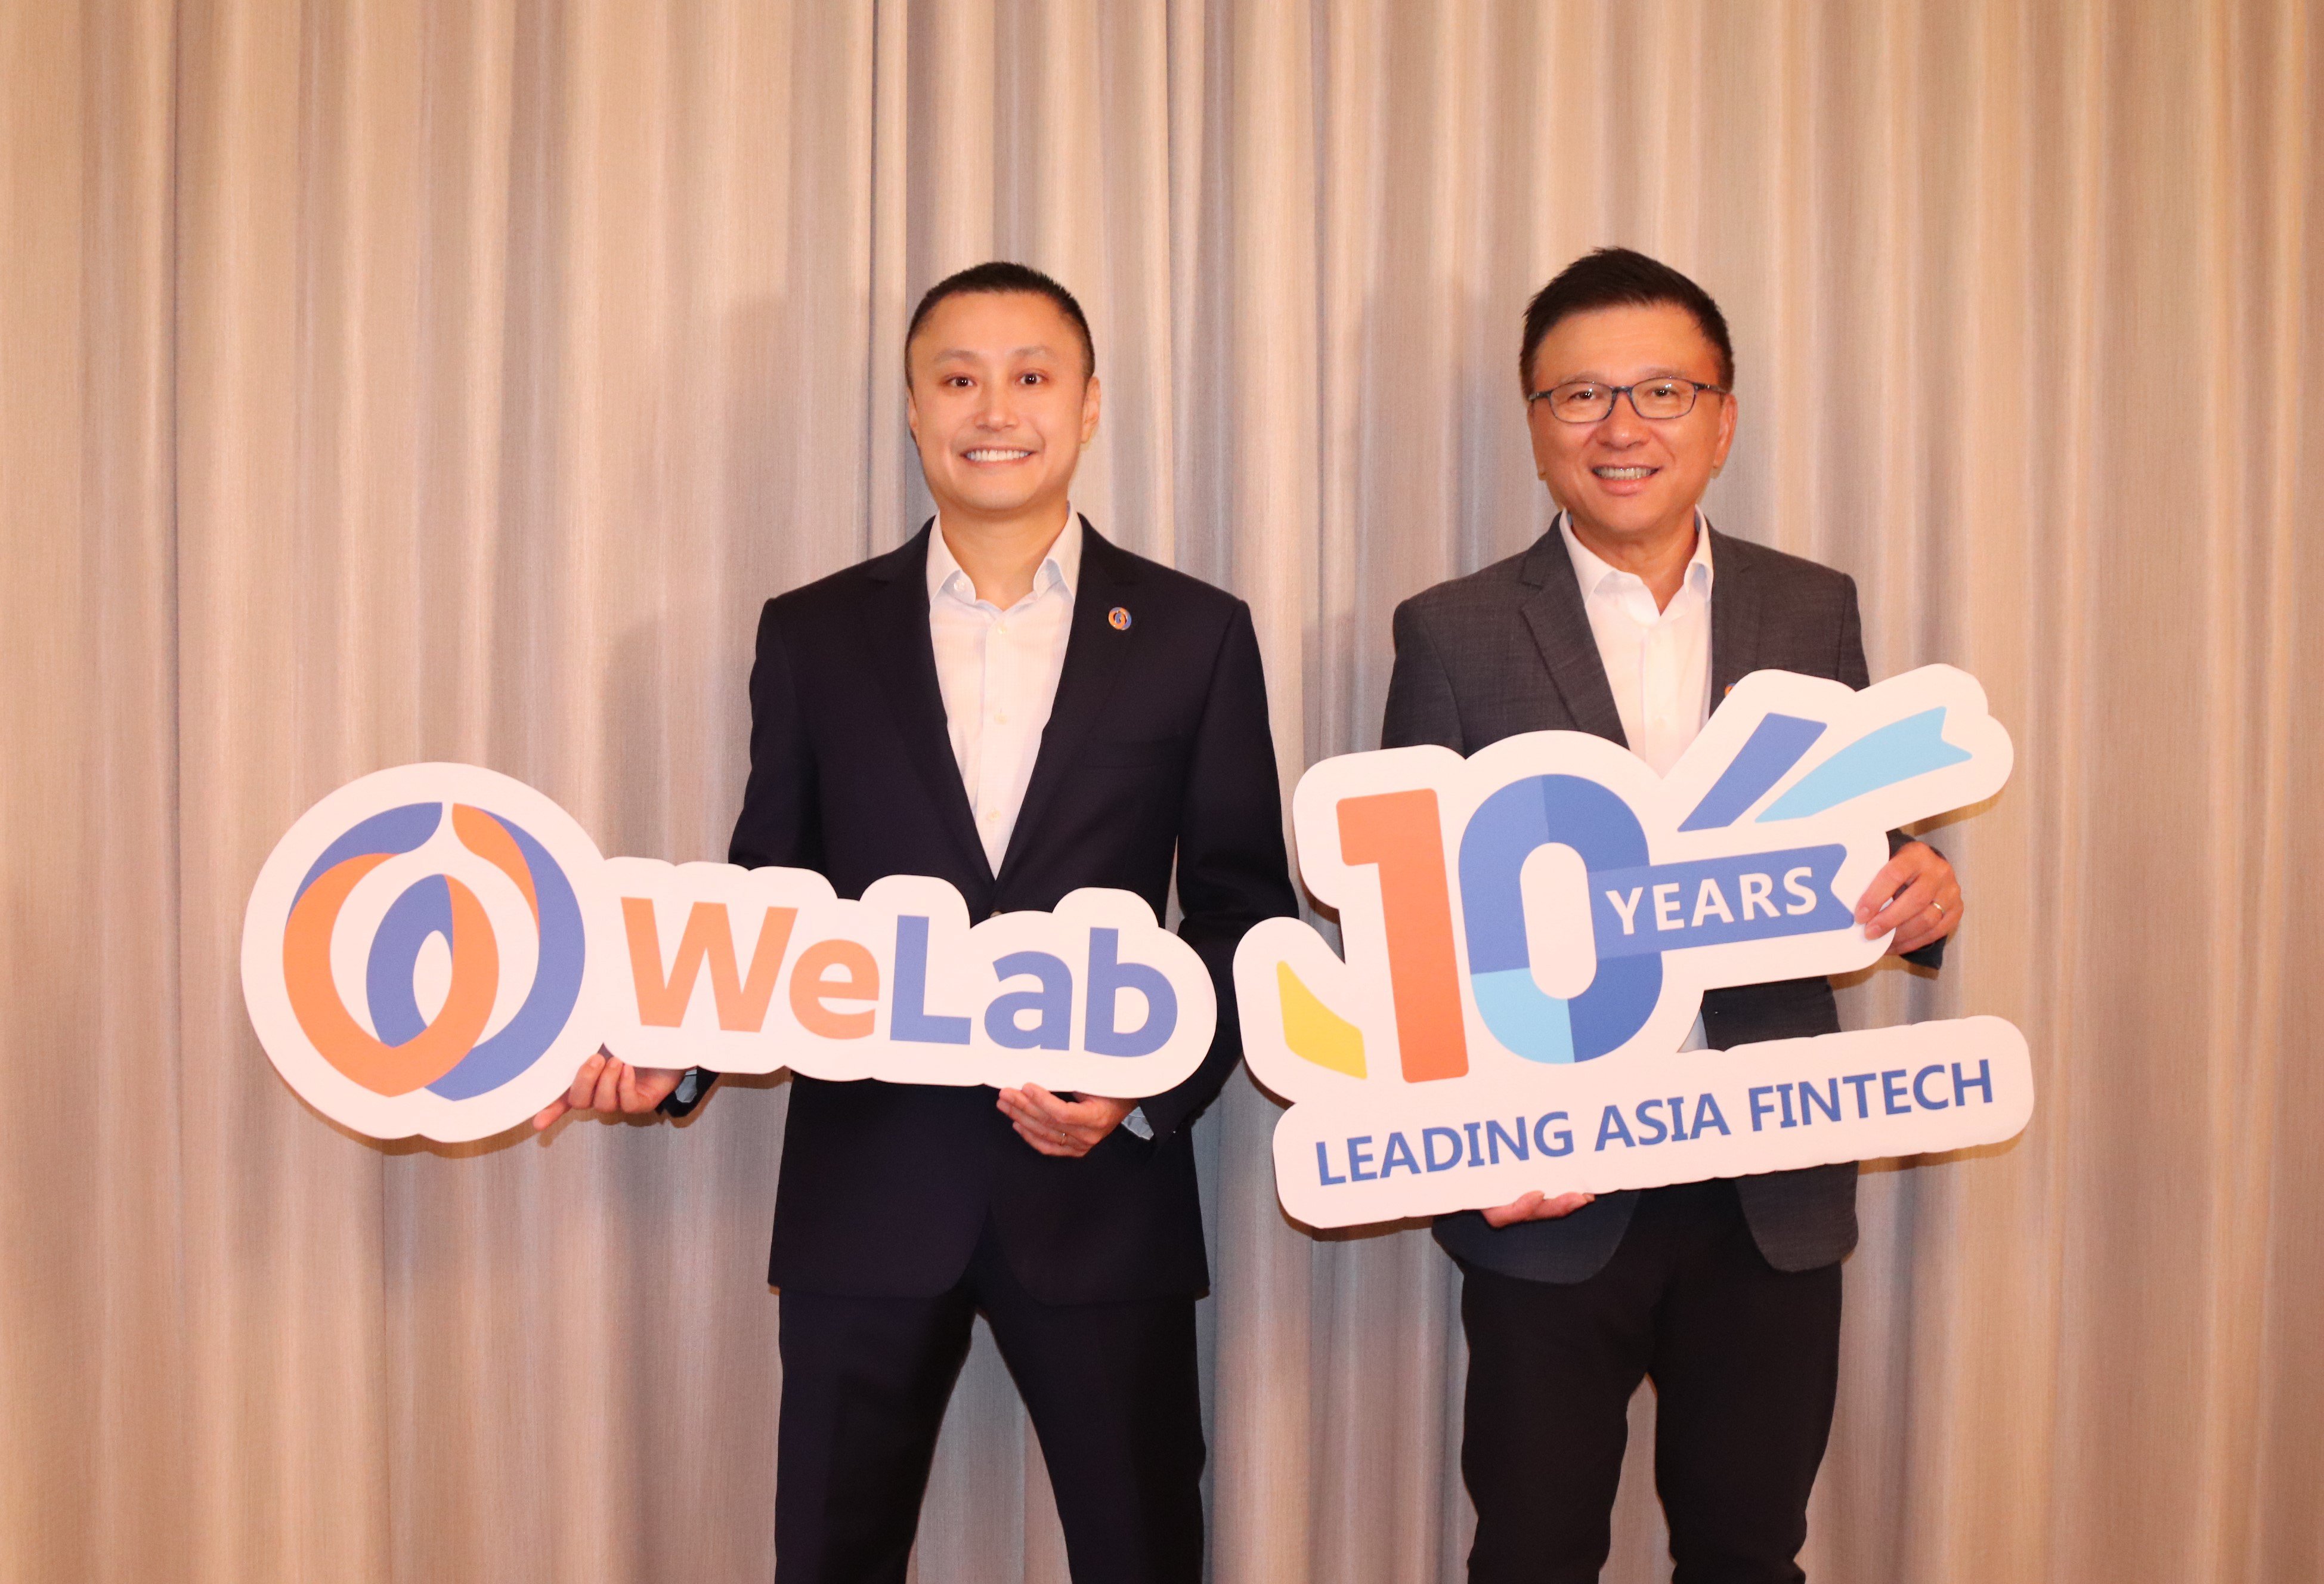 WeLab創辦人及集團行政總裁龍沛智（左）與WeLab資深顧問陳家強教授（右） 對亞洲市場的金融科技發展機會充滿信心。